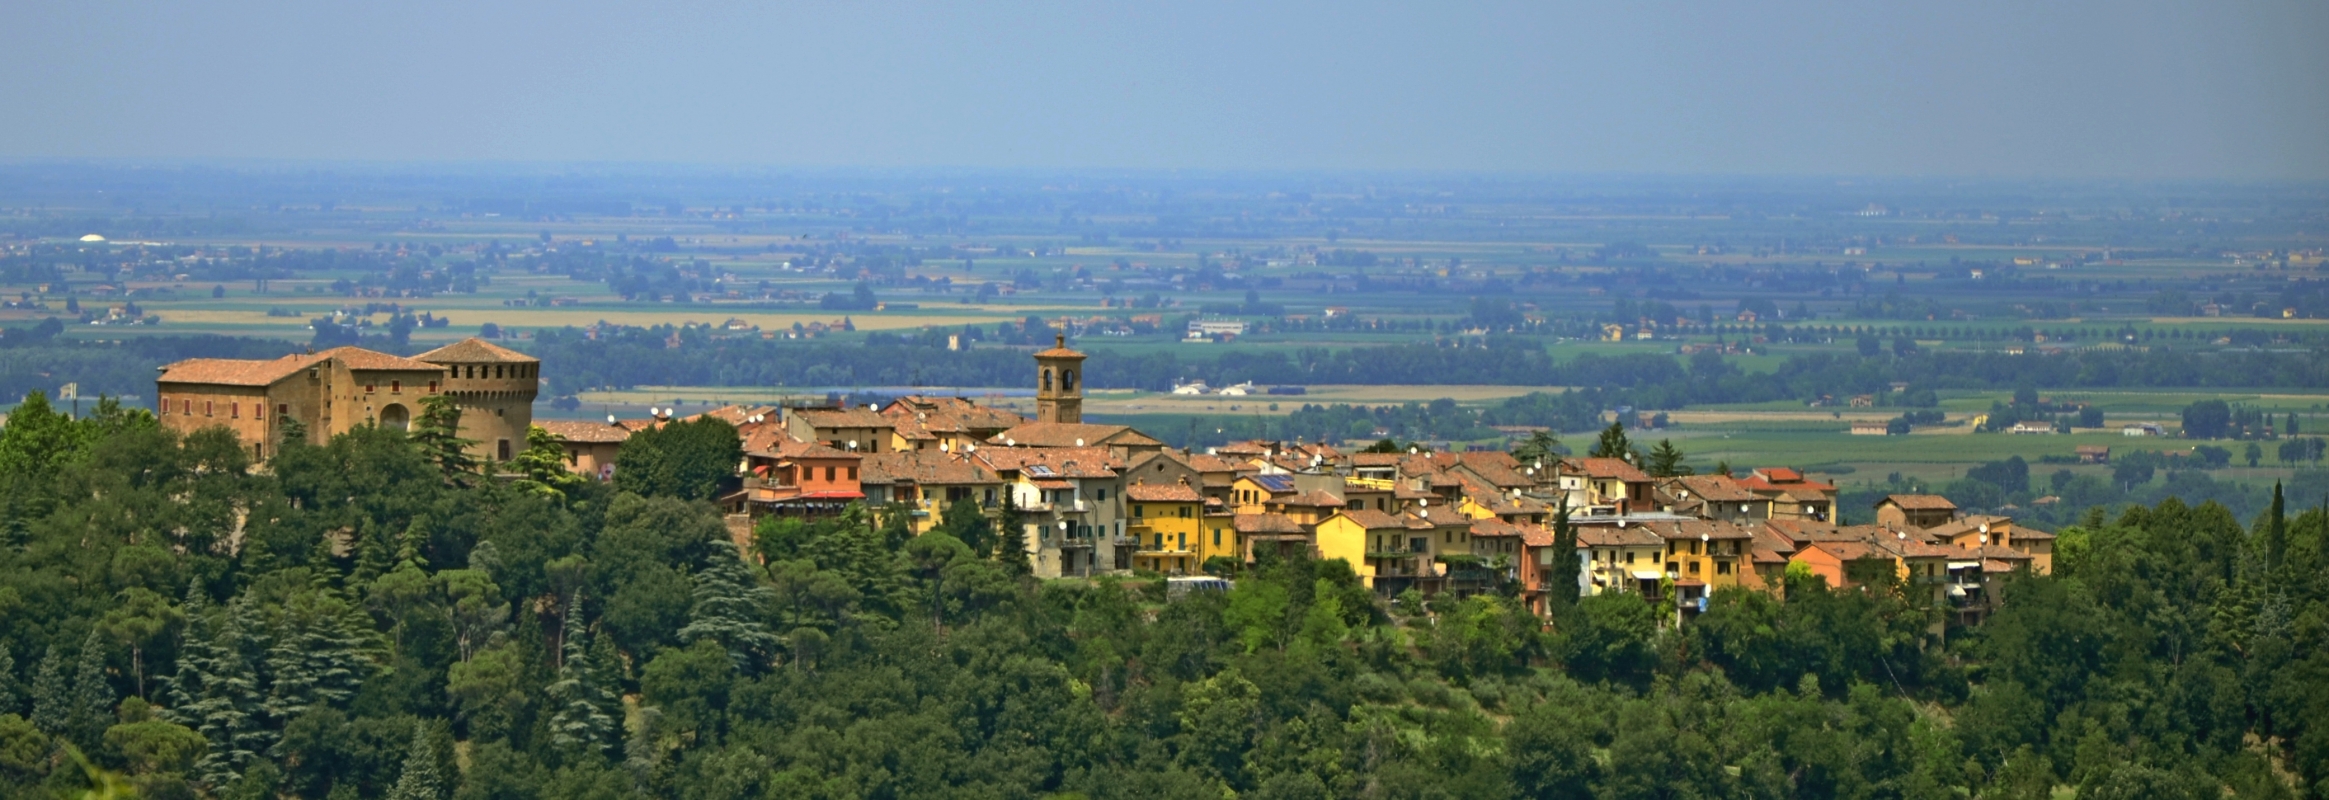 Vista sul borgo - Durmas (Durelli Massimo)